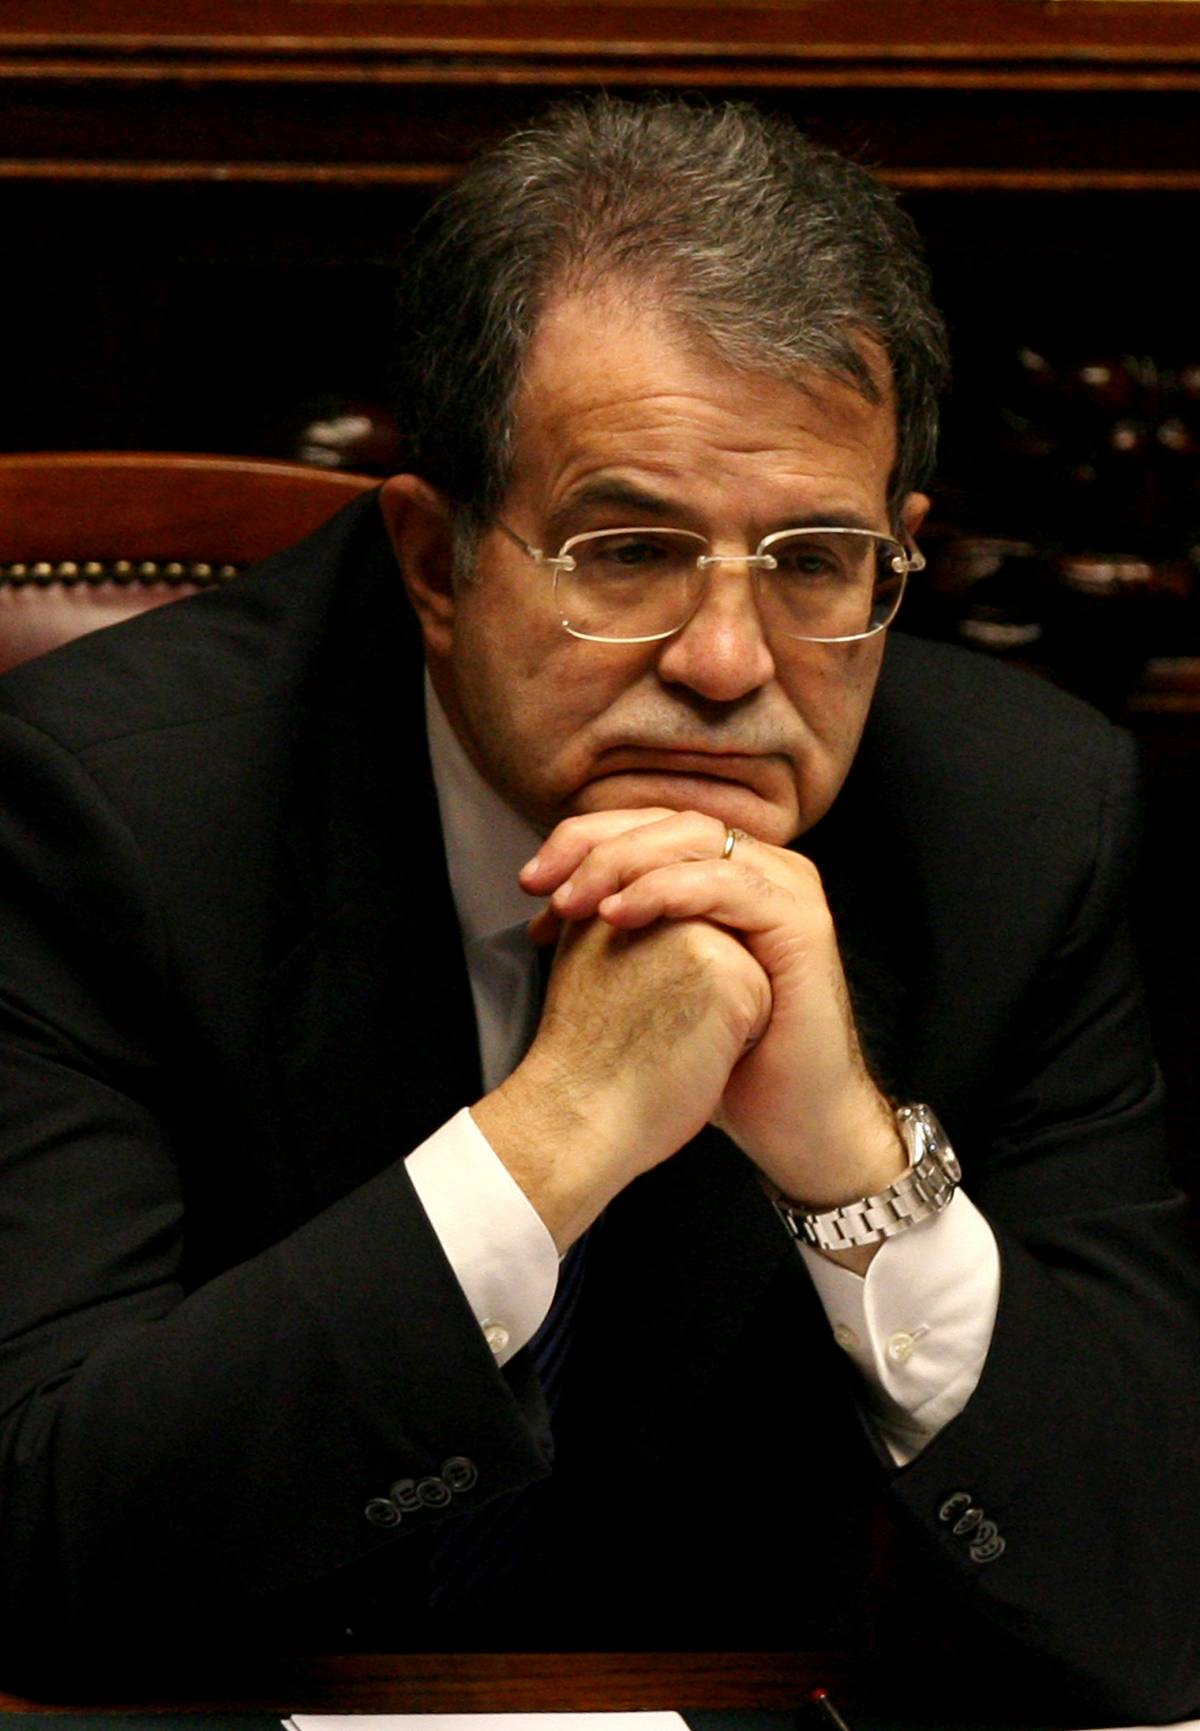 Le sette bombe a orologeria che rischiano di far saltare Prodi